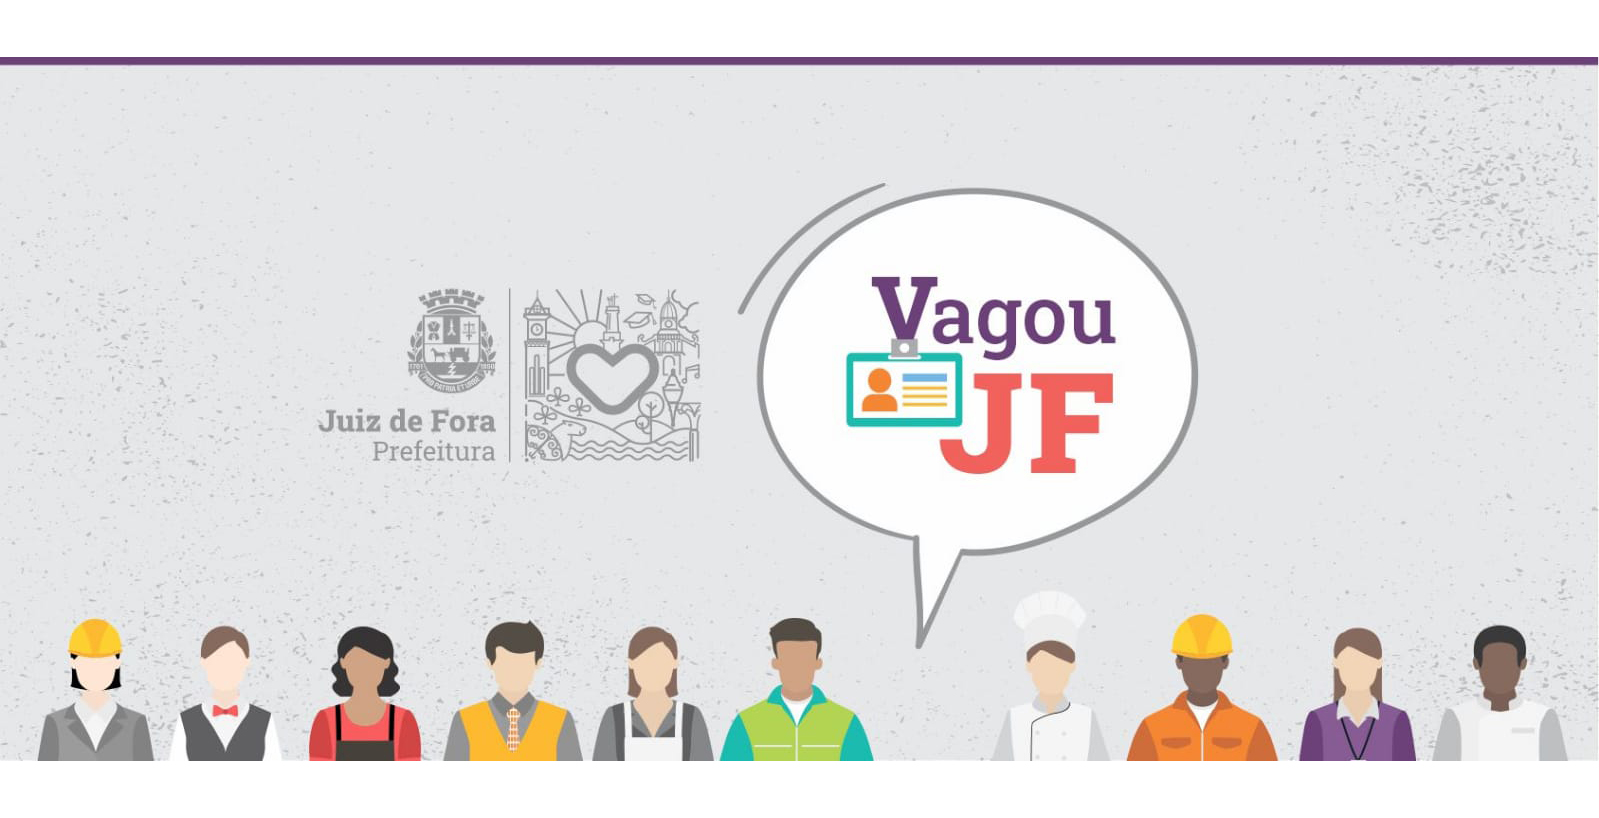 Portal de Notícias PJF | “Vagou JF” tem vagas abertas para instalador comercial de máquinas e outras oportunidades | SEDIC - 4/7/2022